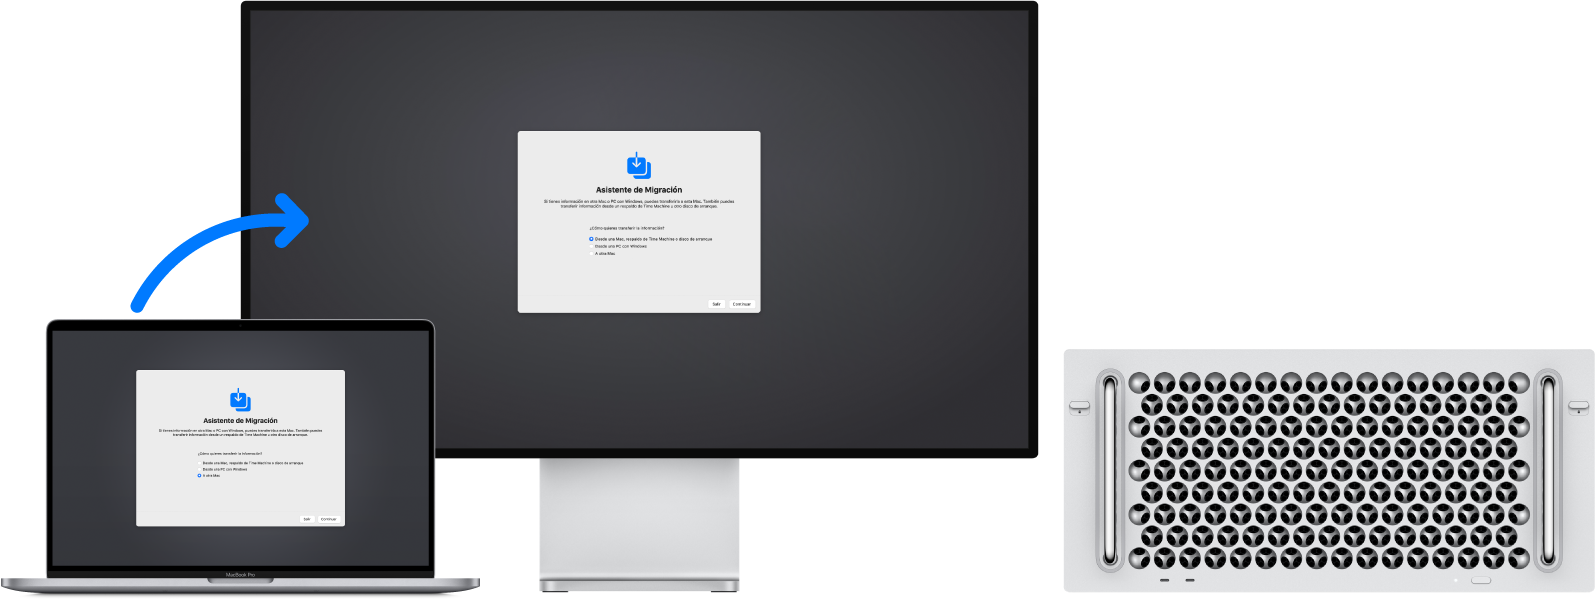 Una MacBook Pro y una Mac Pro mostrando la pantalla de Asistente de Migración. Una flecha que va desde la MacBook Pro hasta la Mac Pro indica que se están transfiriendo datos de una a la otra.